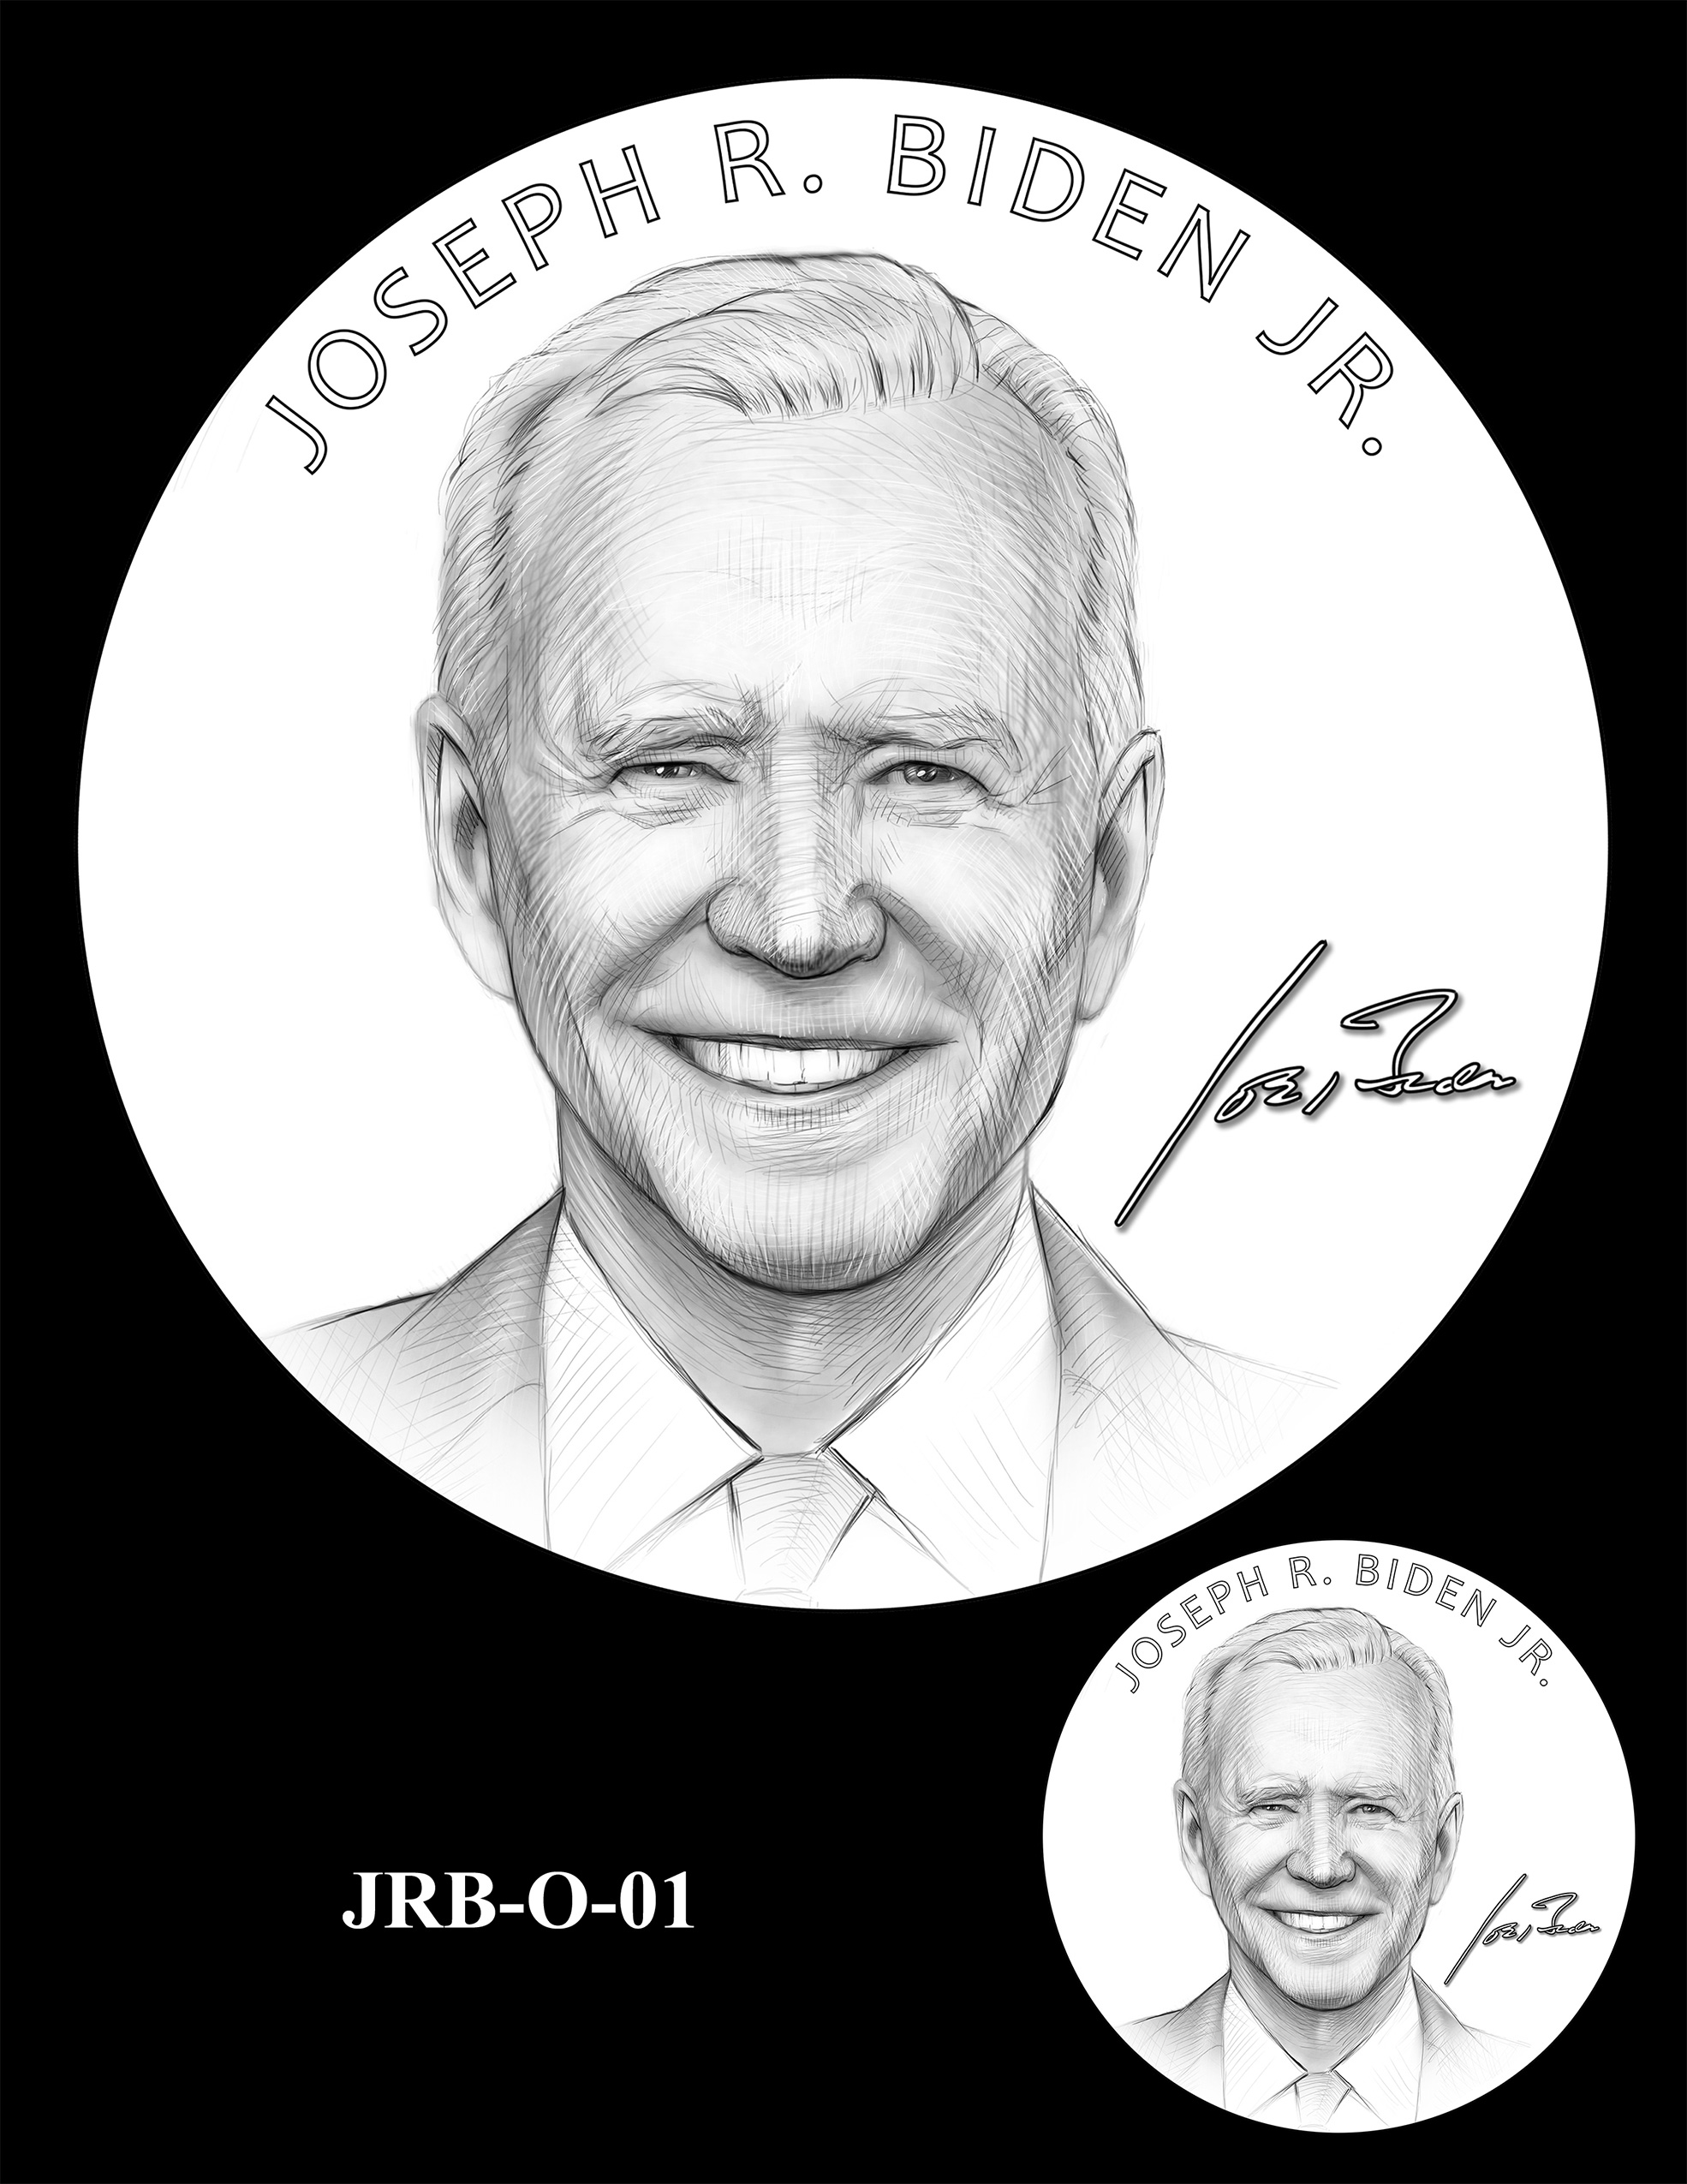 JRB-O-01 -- Joseph R. Biden Jr. Presidential Medal